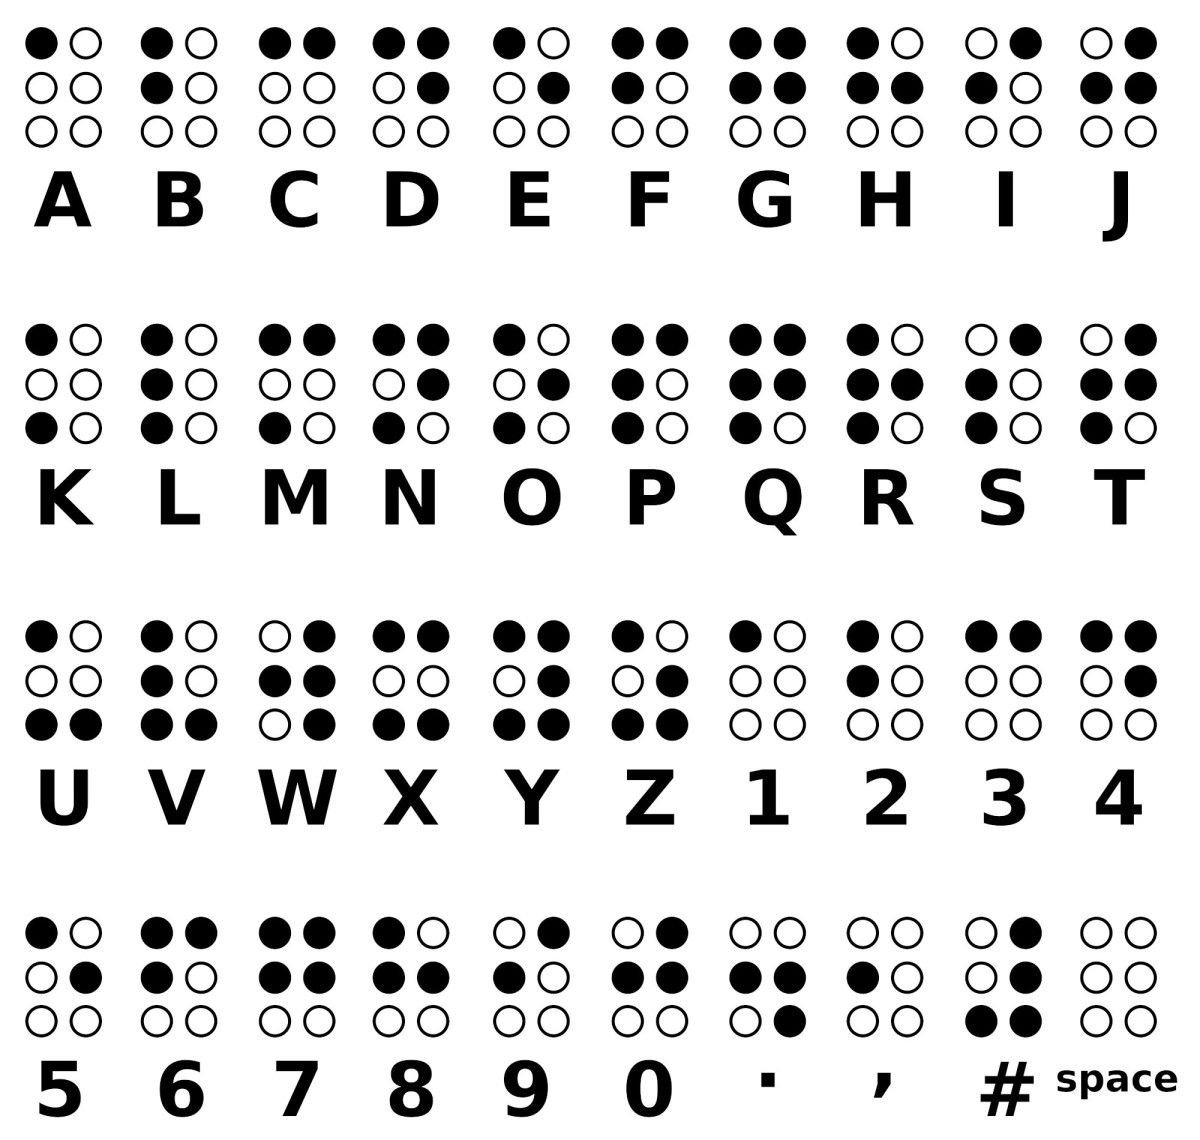 Tafel mit dem Braille-Alphabet.: Die Buchstaben der Blindenschrift bestehen aus Kombinationen der erhöhten Punkte